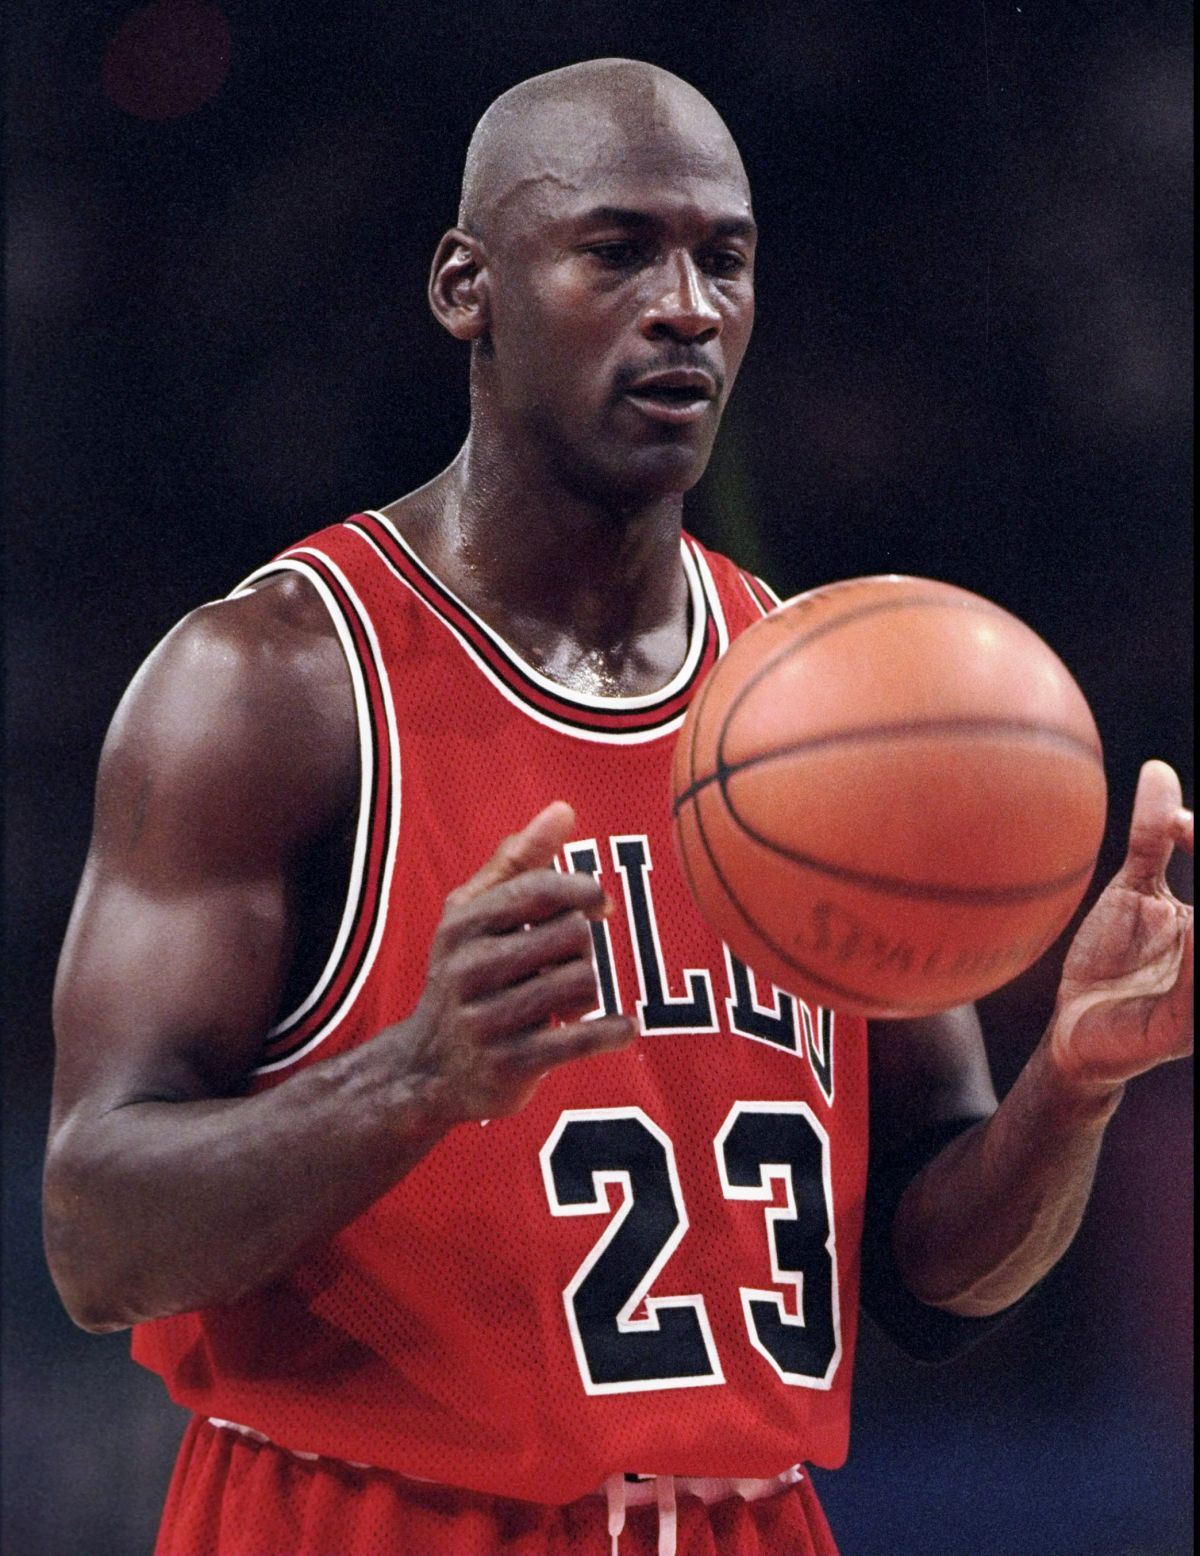 Michael Jordan, acuzat că a mințit în „The Last Dance”: „Sunt multe lucruri inventate. Faza cu pizza nu are sens!”